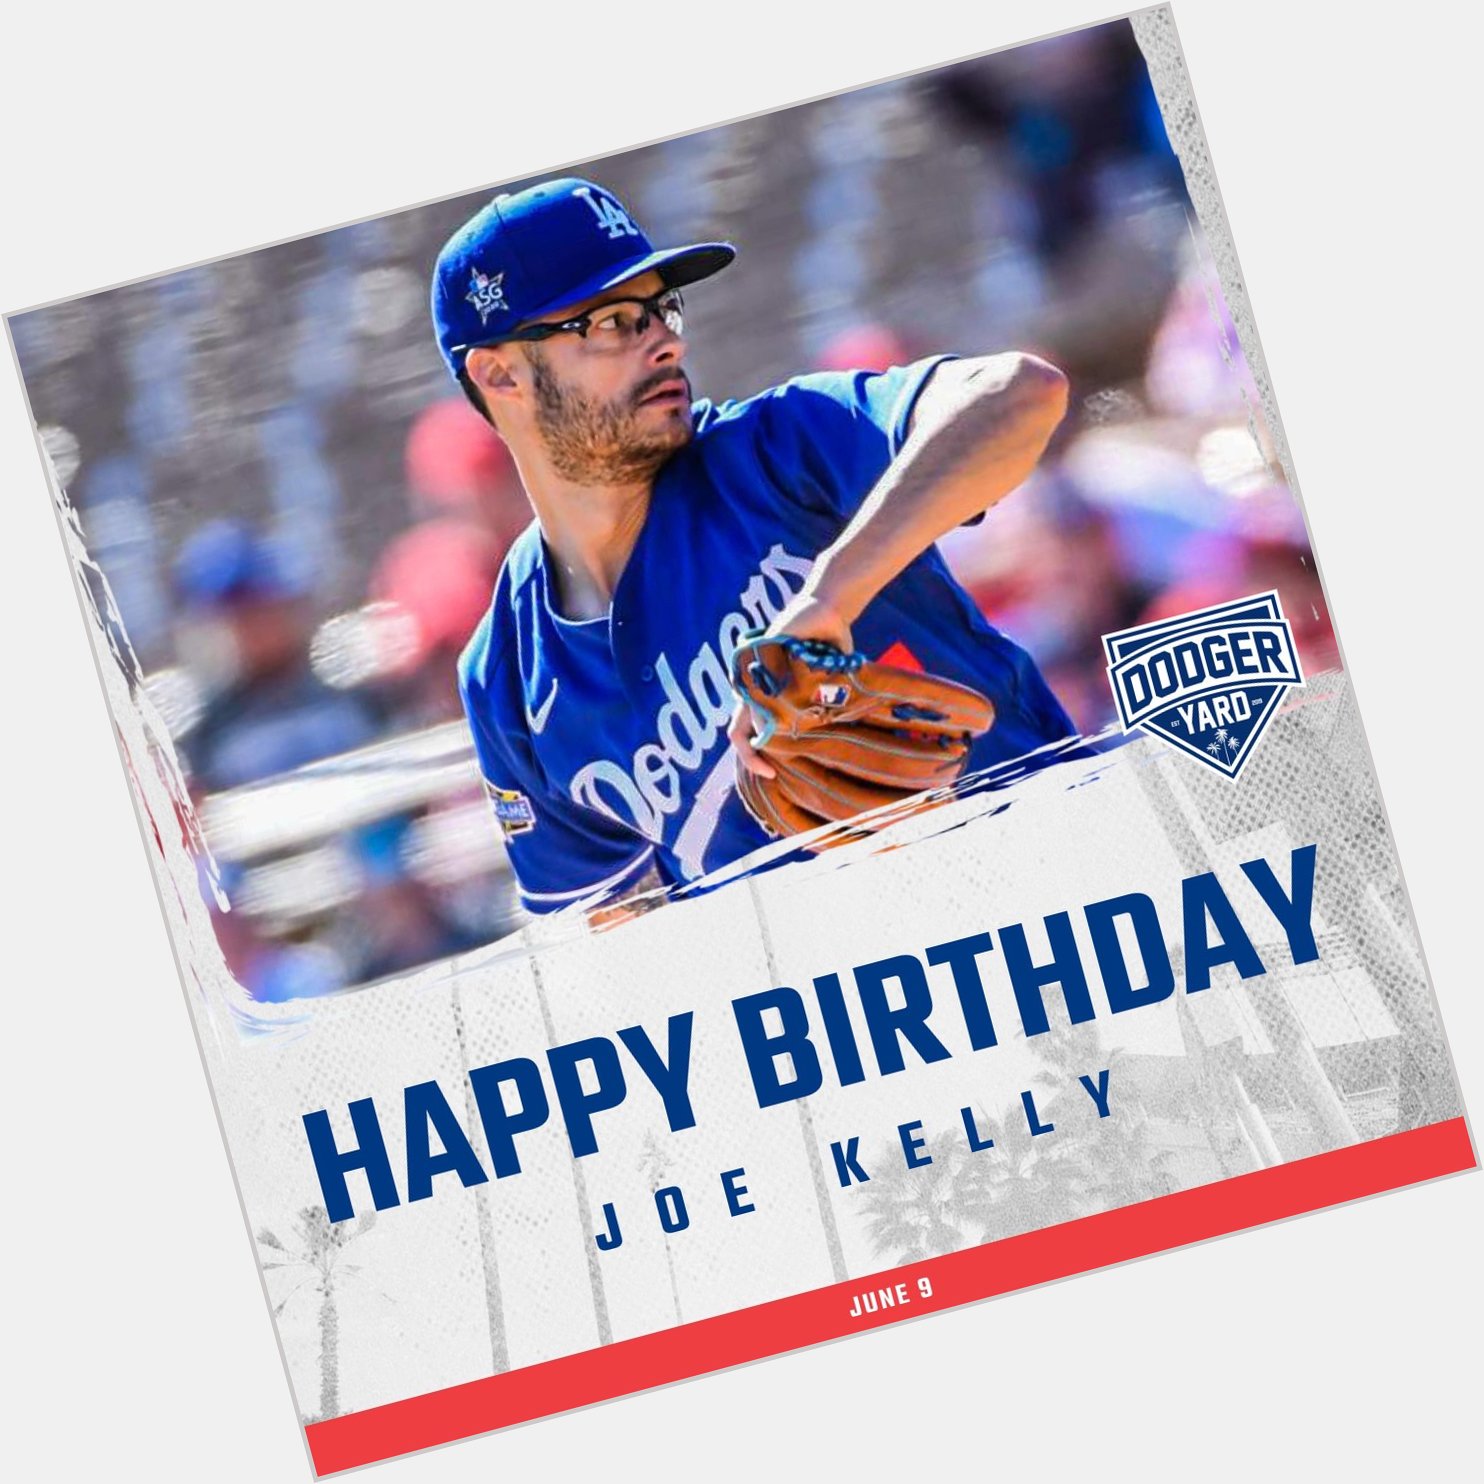 Happy birthday, Joe Kelly! 